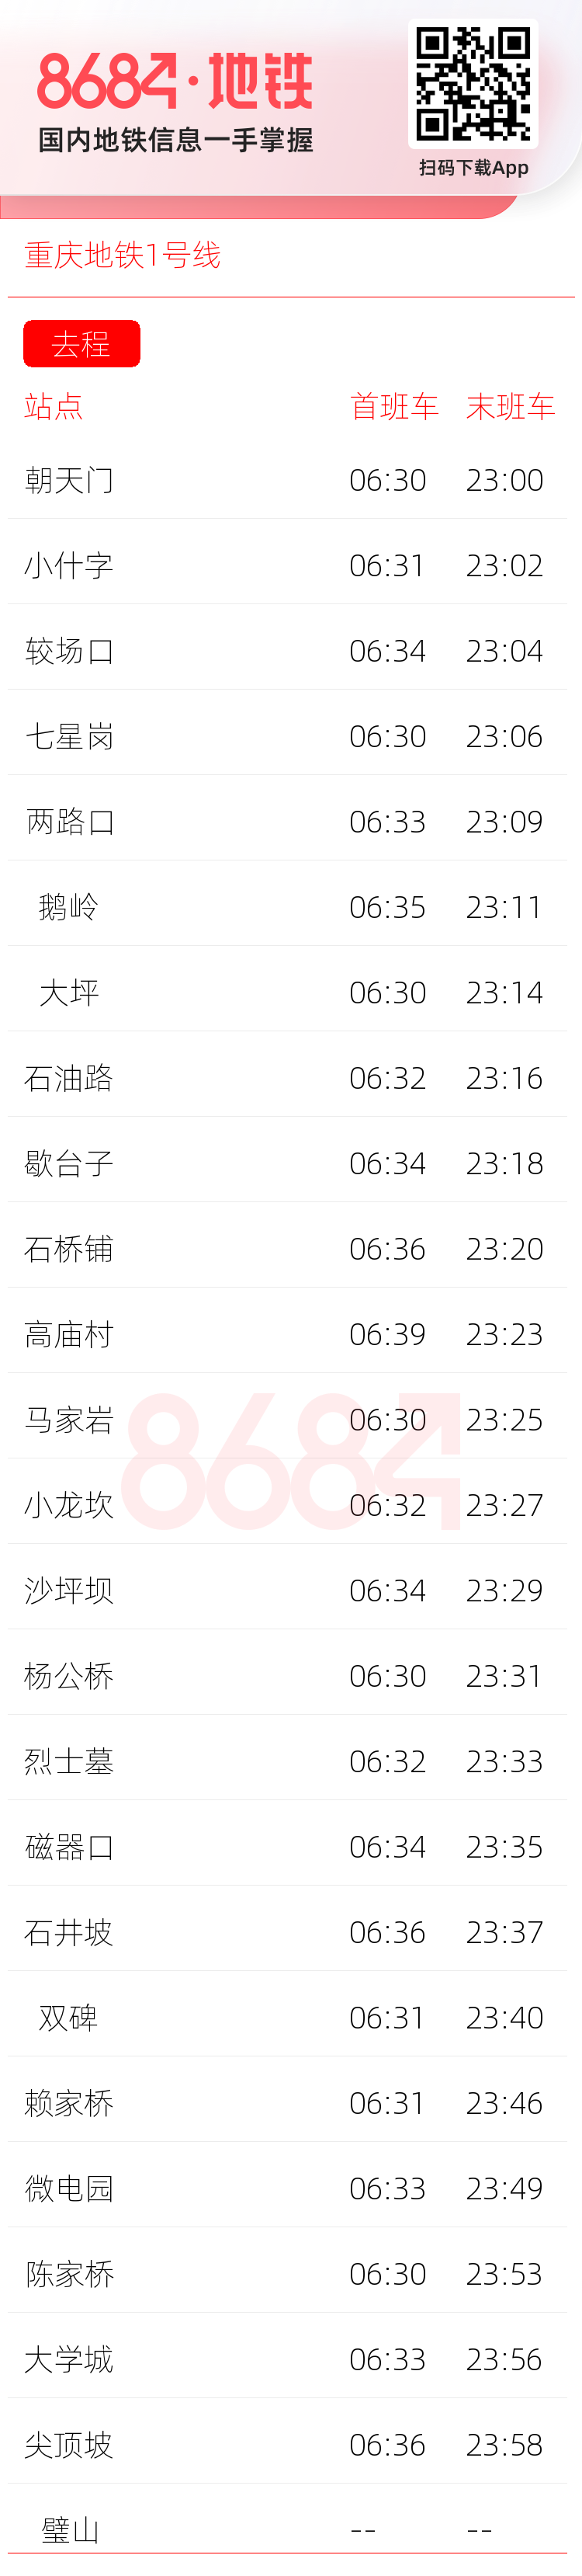 重庆地铁1号线运营时间表